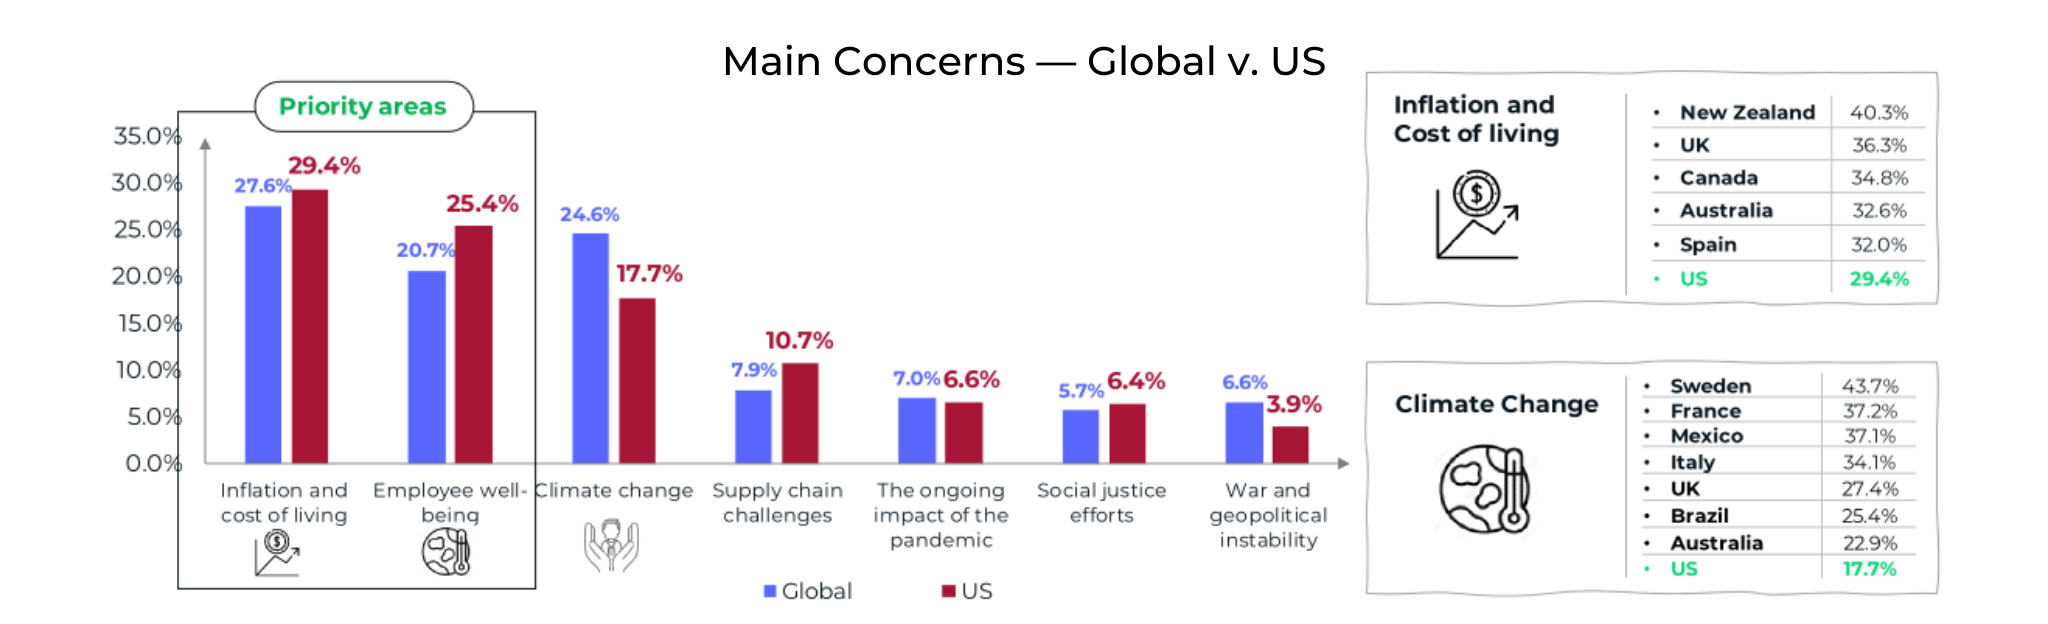 Main Concerns Global v US